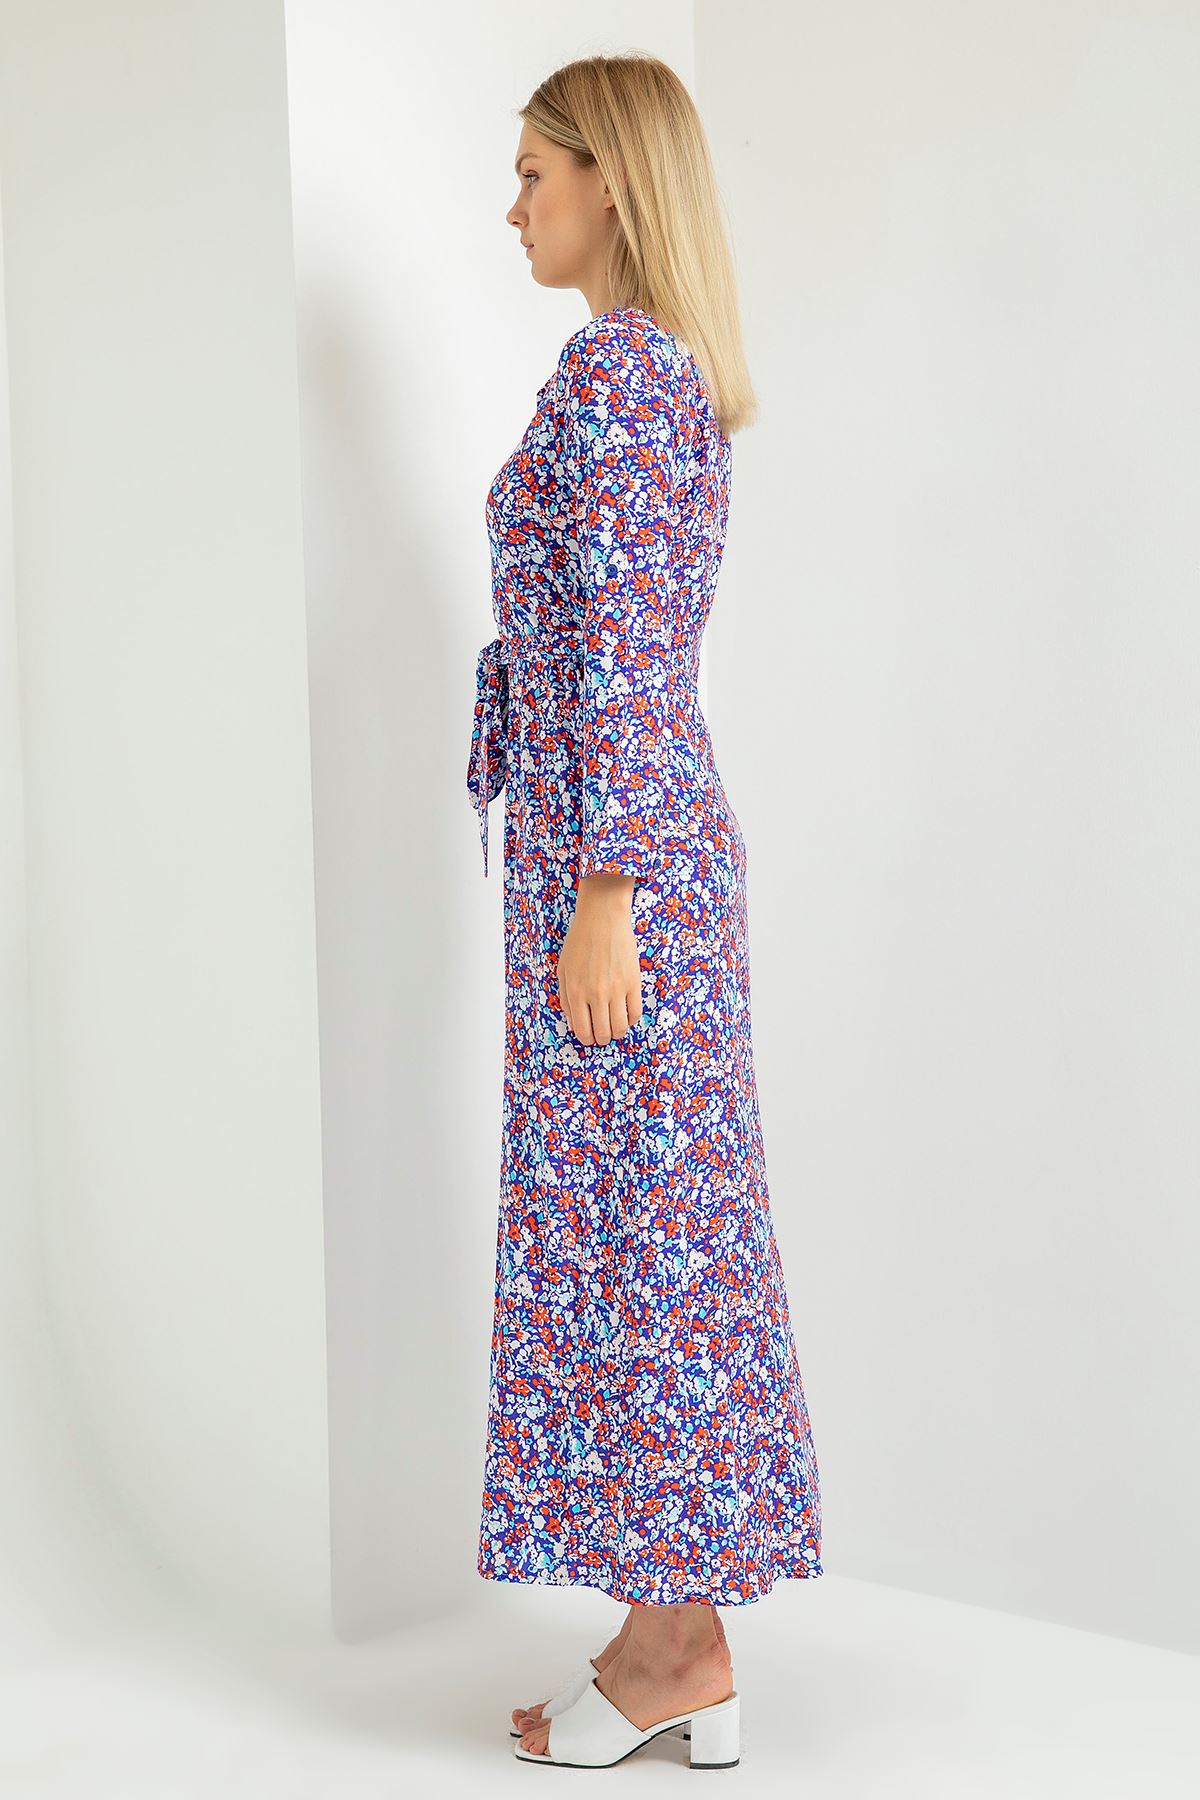 вискоза ткань отложной воротник цветочный принтЖенское платье с поясом - Фиолетовый